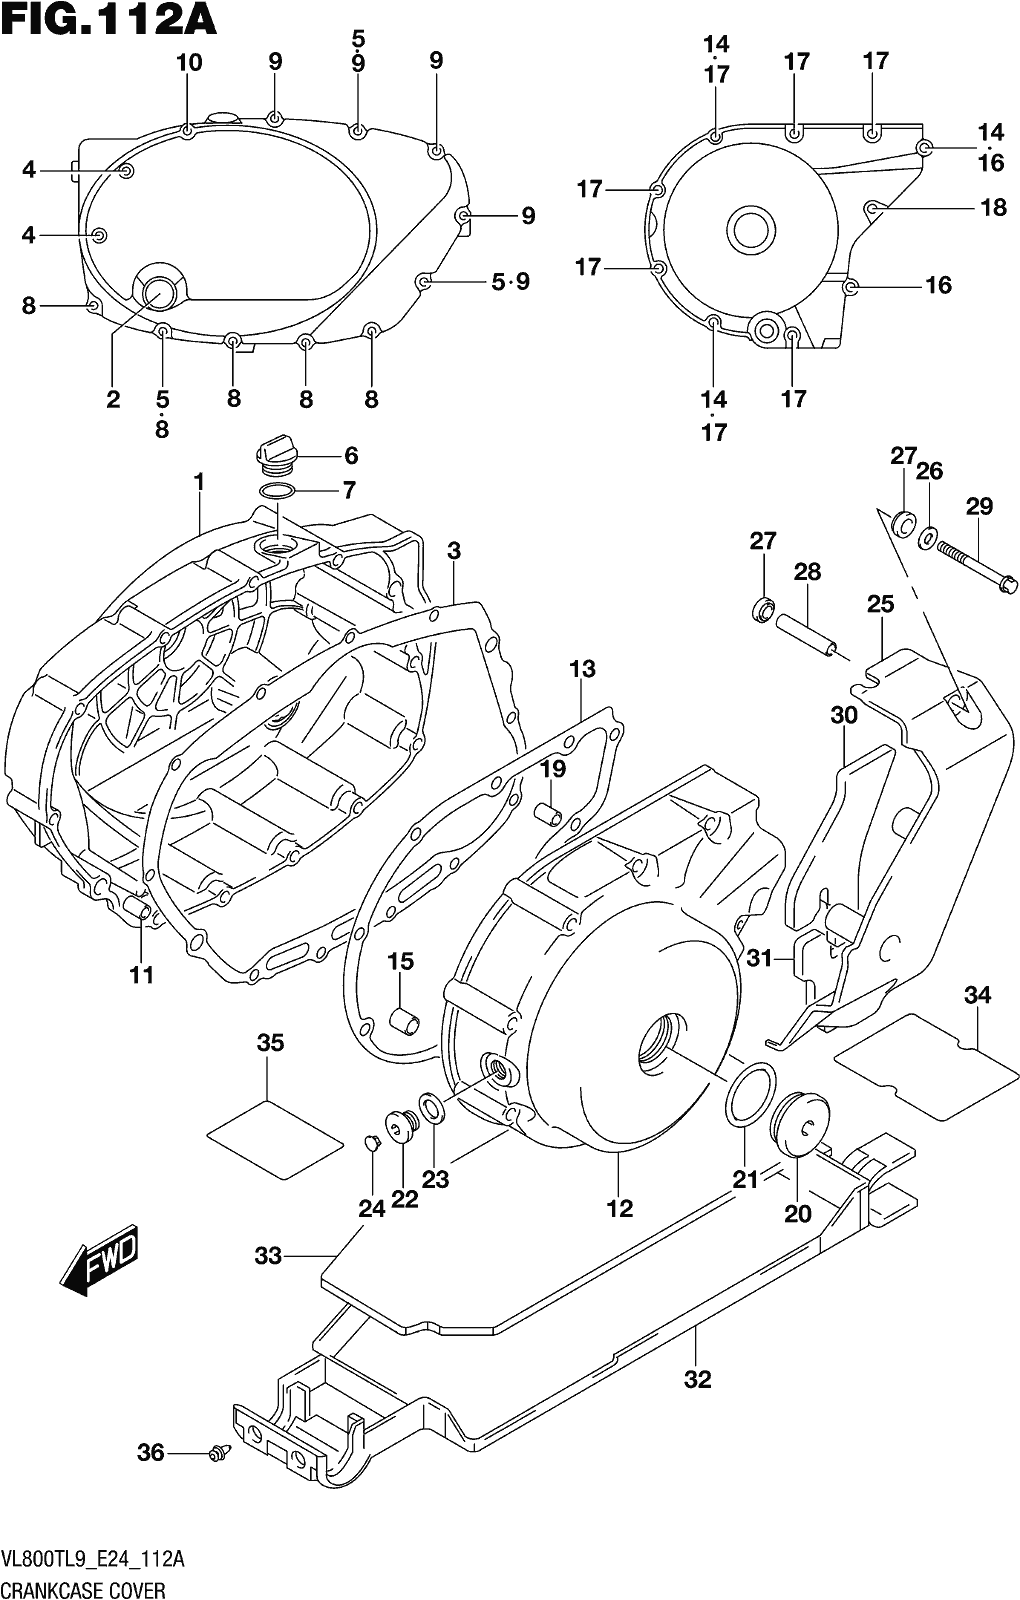 Alle Teile für das Fig. 112a Crankcase Cover des Suzuki VL 800T 2019